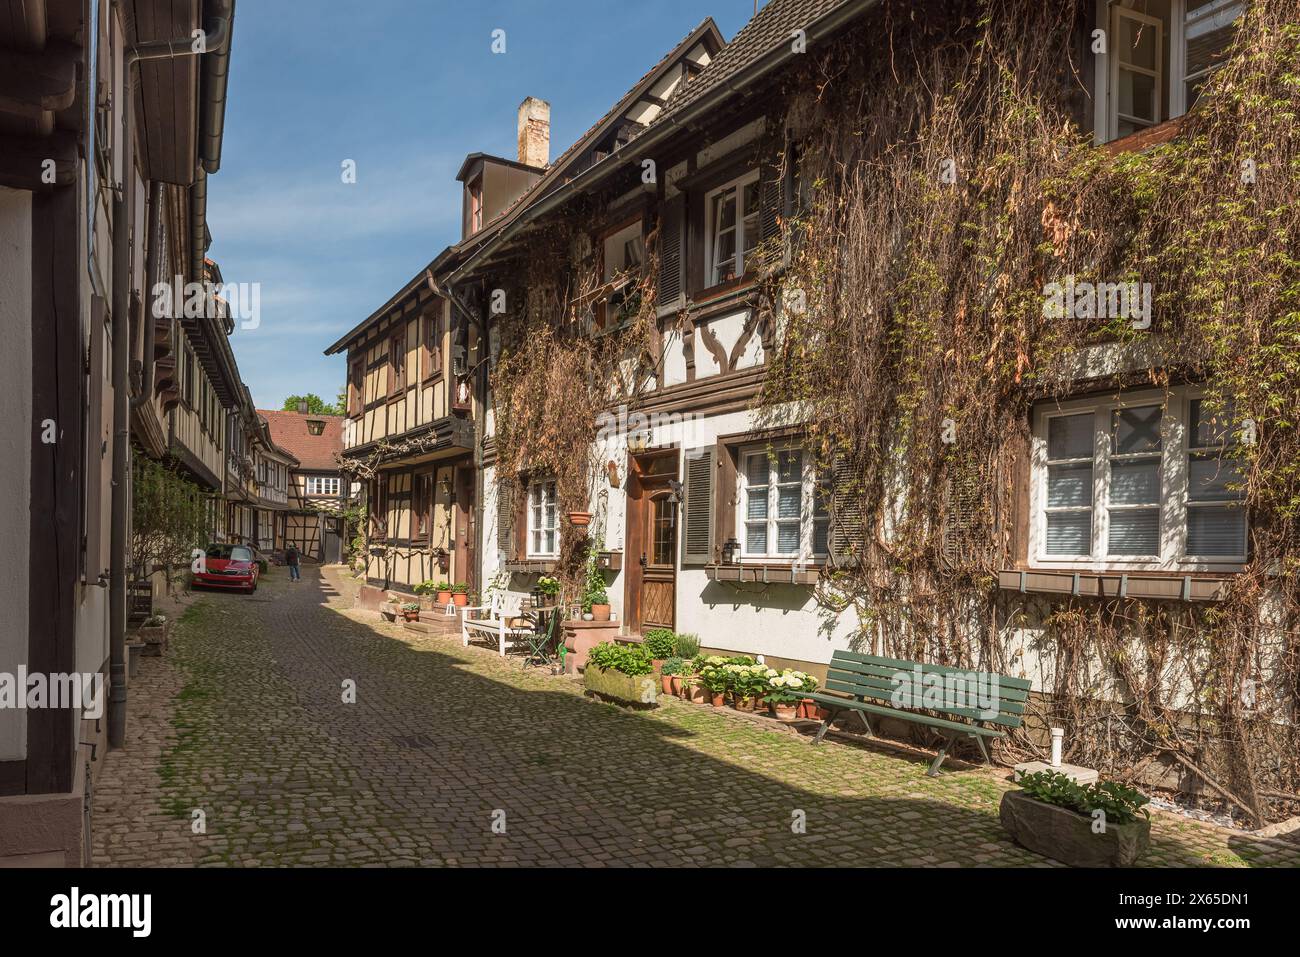 Ruelle avec pavés et maisons à colombages dans la vieille ville historique de Gengenbach, Kinzigtal, Forêt Noire, Bade-Wuerttemberg, Allemagne Banque D'Images